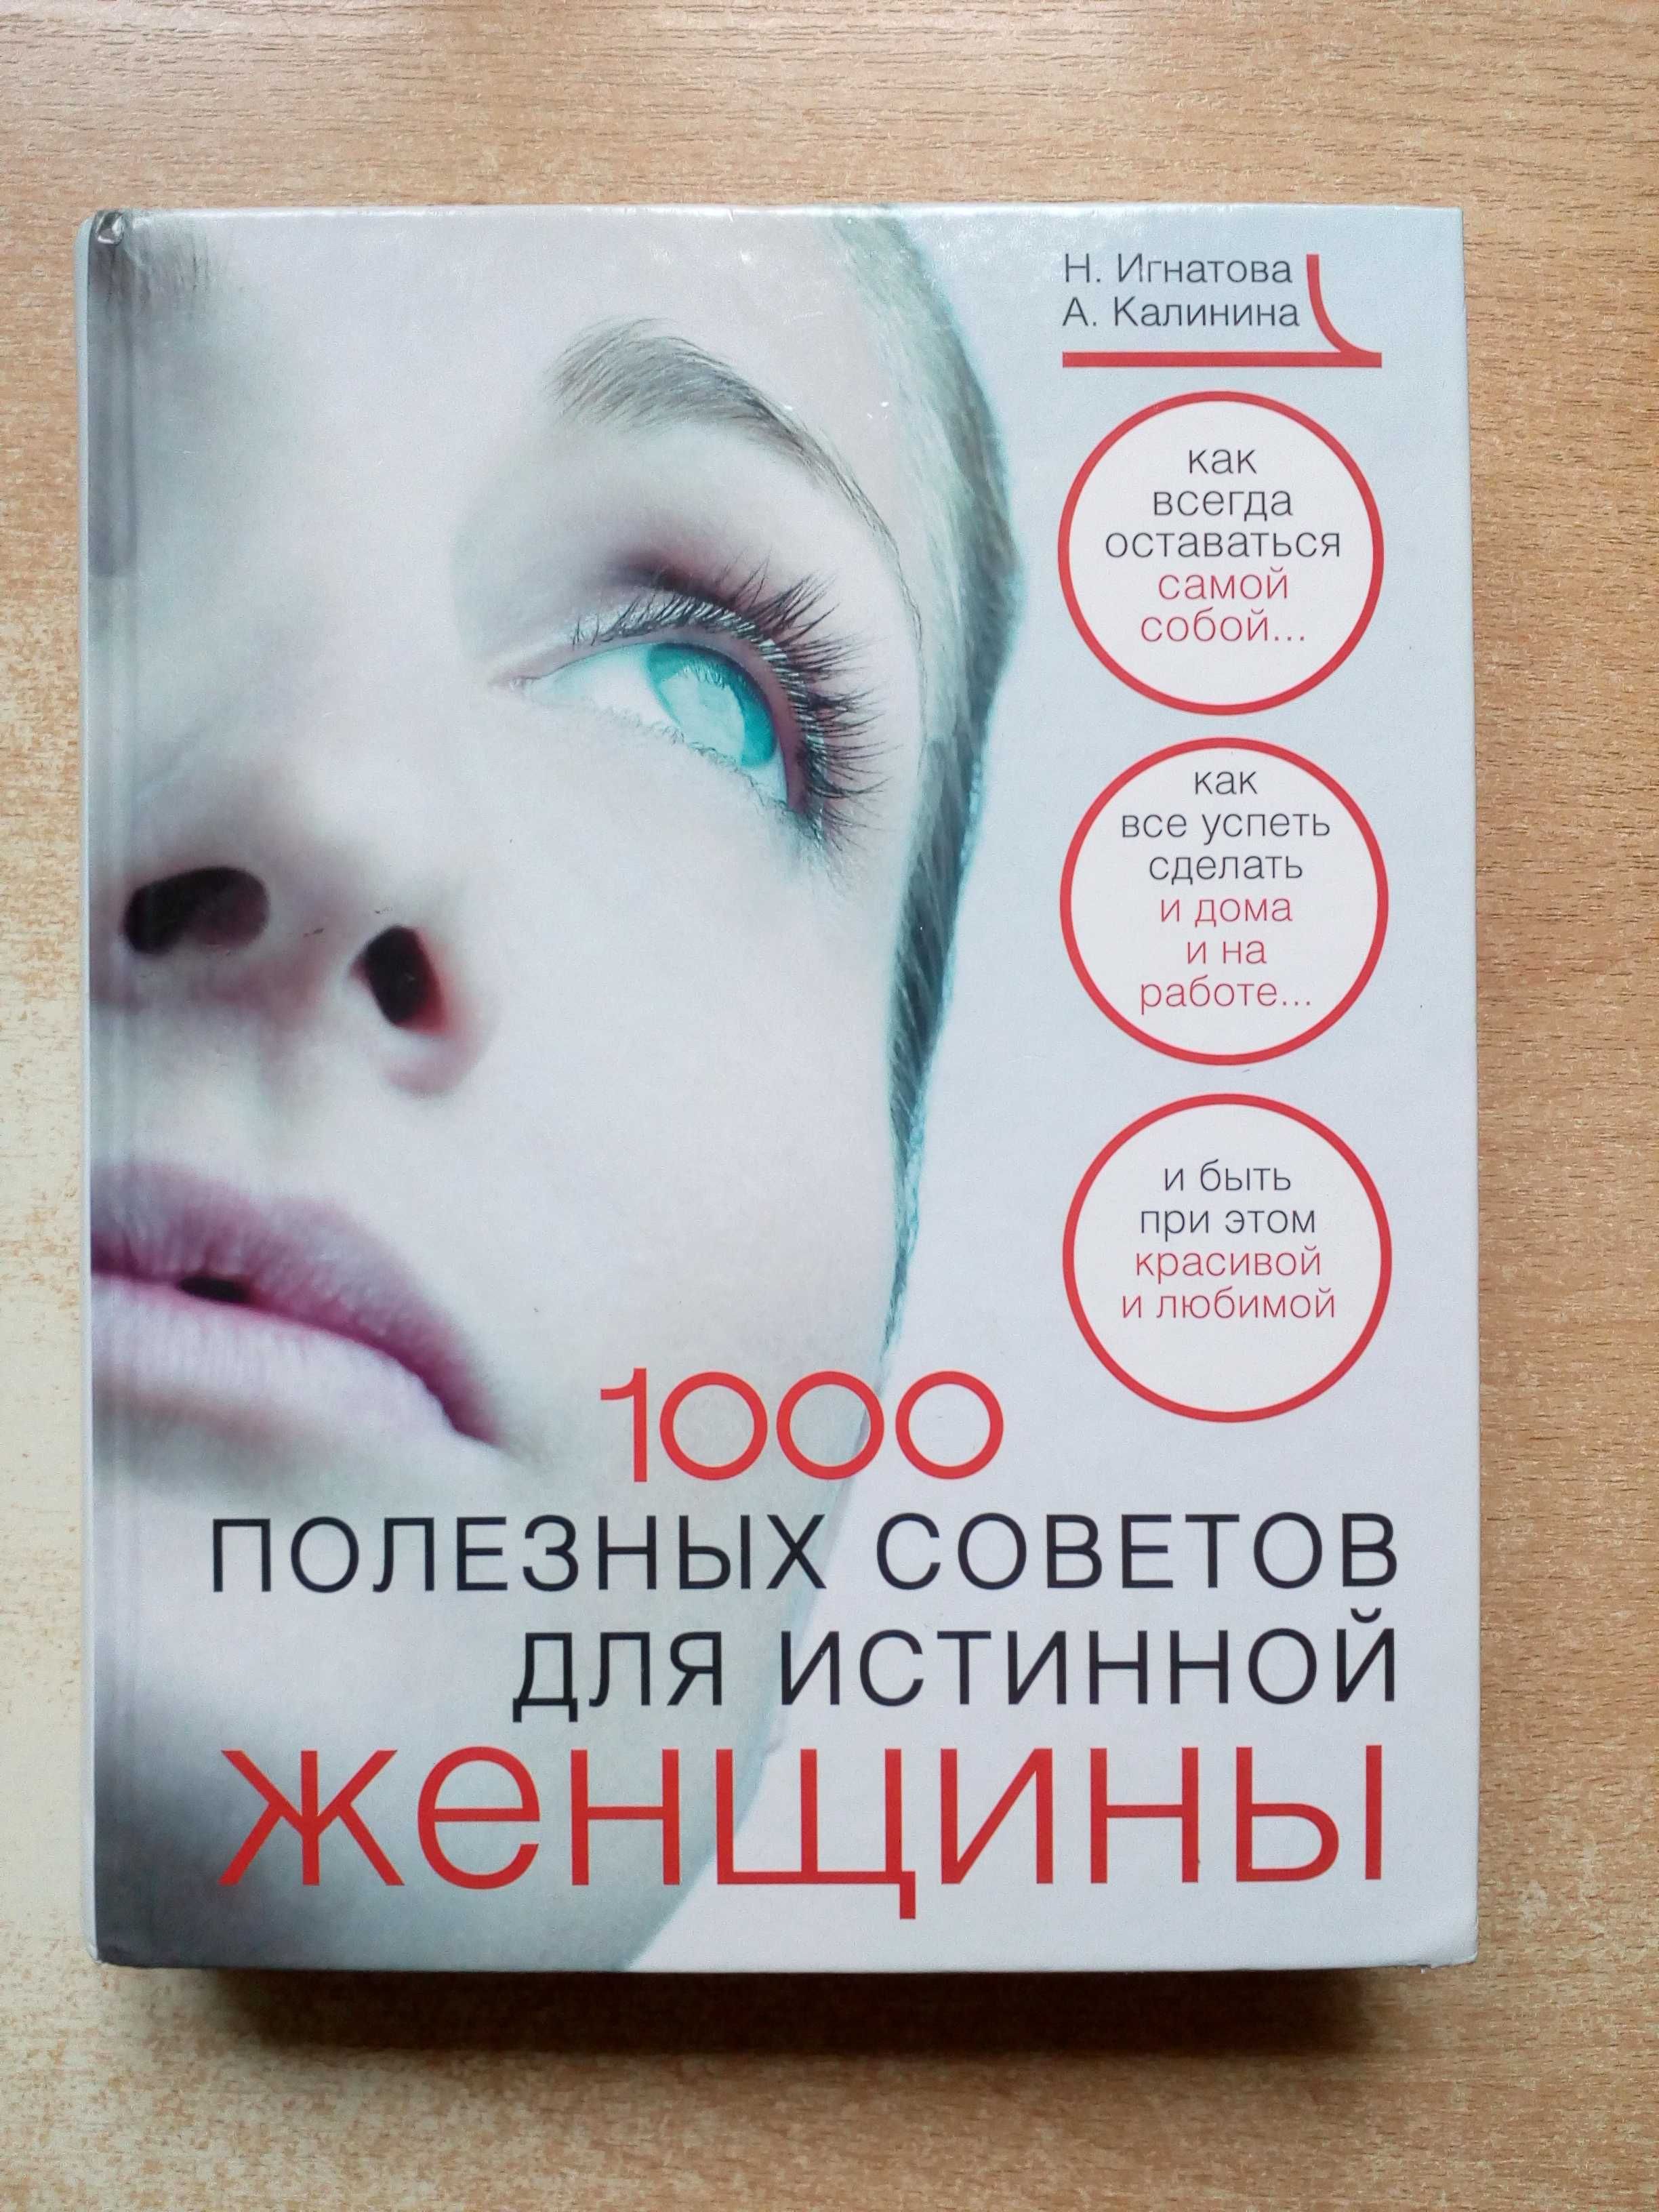 Игнатова,Калинина"1000 полезных советов для истинной женщины".